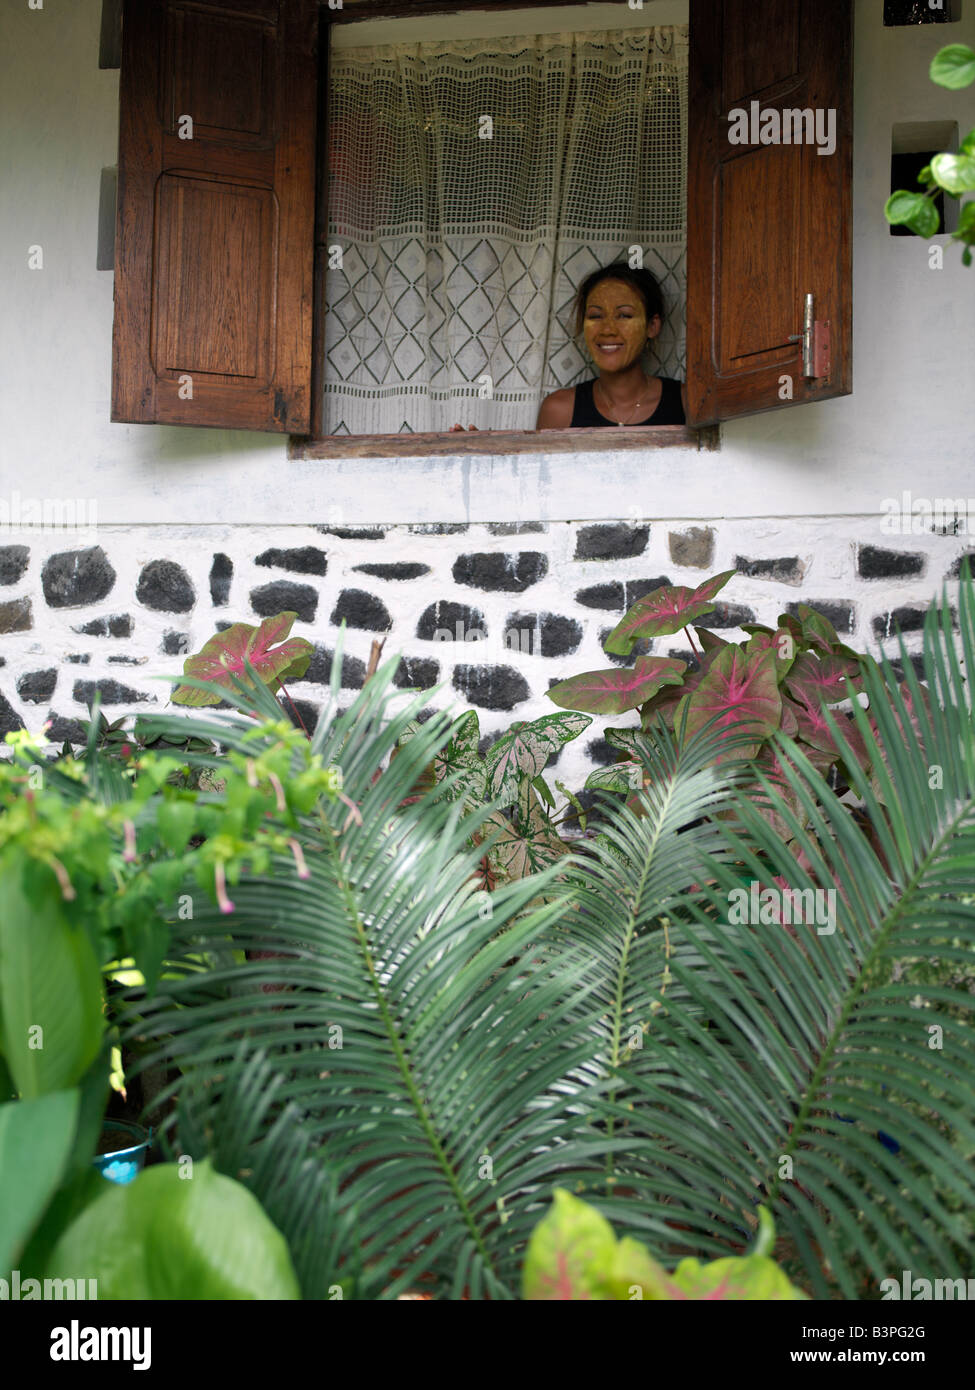 Le nord de Madagascar, une femme malgache regarde par la fenêtre de sa belle maison à Ramena, un village de pêcheurs à une courte distance de Antsiranana, plus communément connu sous le nom de Diego.Elle a couvert son visage avec une pâte faite à partir de la poudre de bois et graines d'un arbre spécial pour éviter les coups de soleil. Cette forme de protection contre le soleil est très fréquent chez les femmes qui travaillent dans les champs de riz toute la journée. Banque D'Images